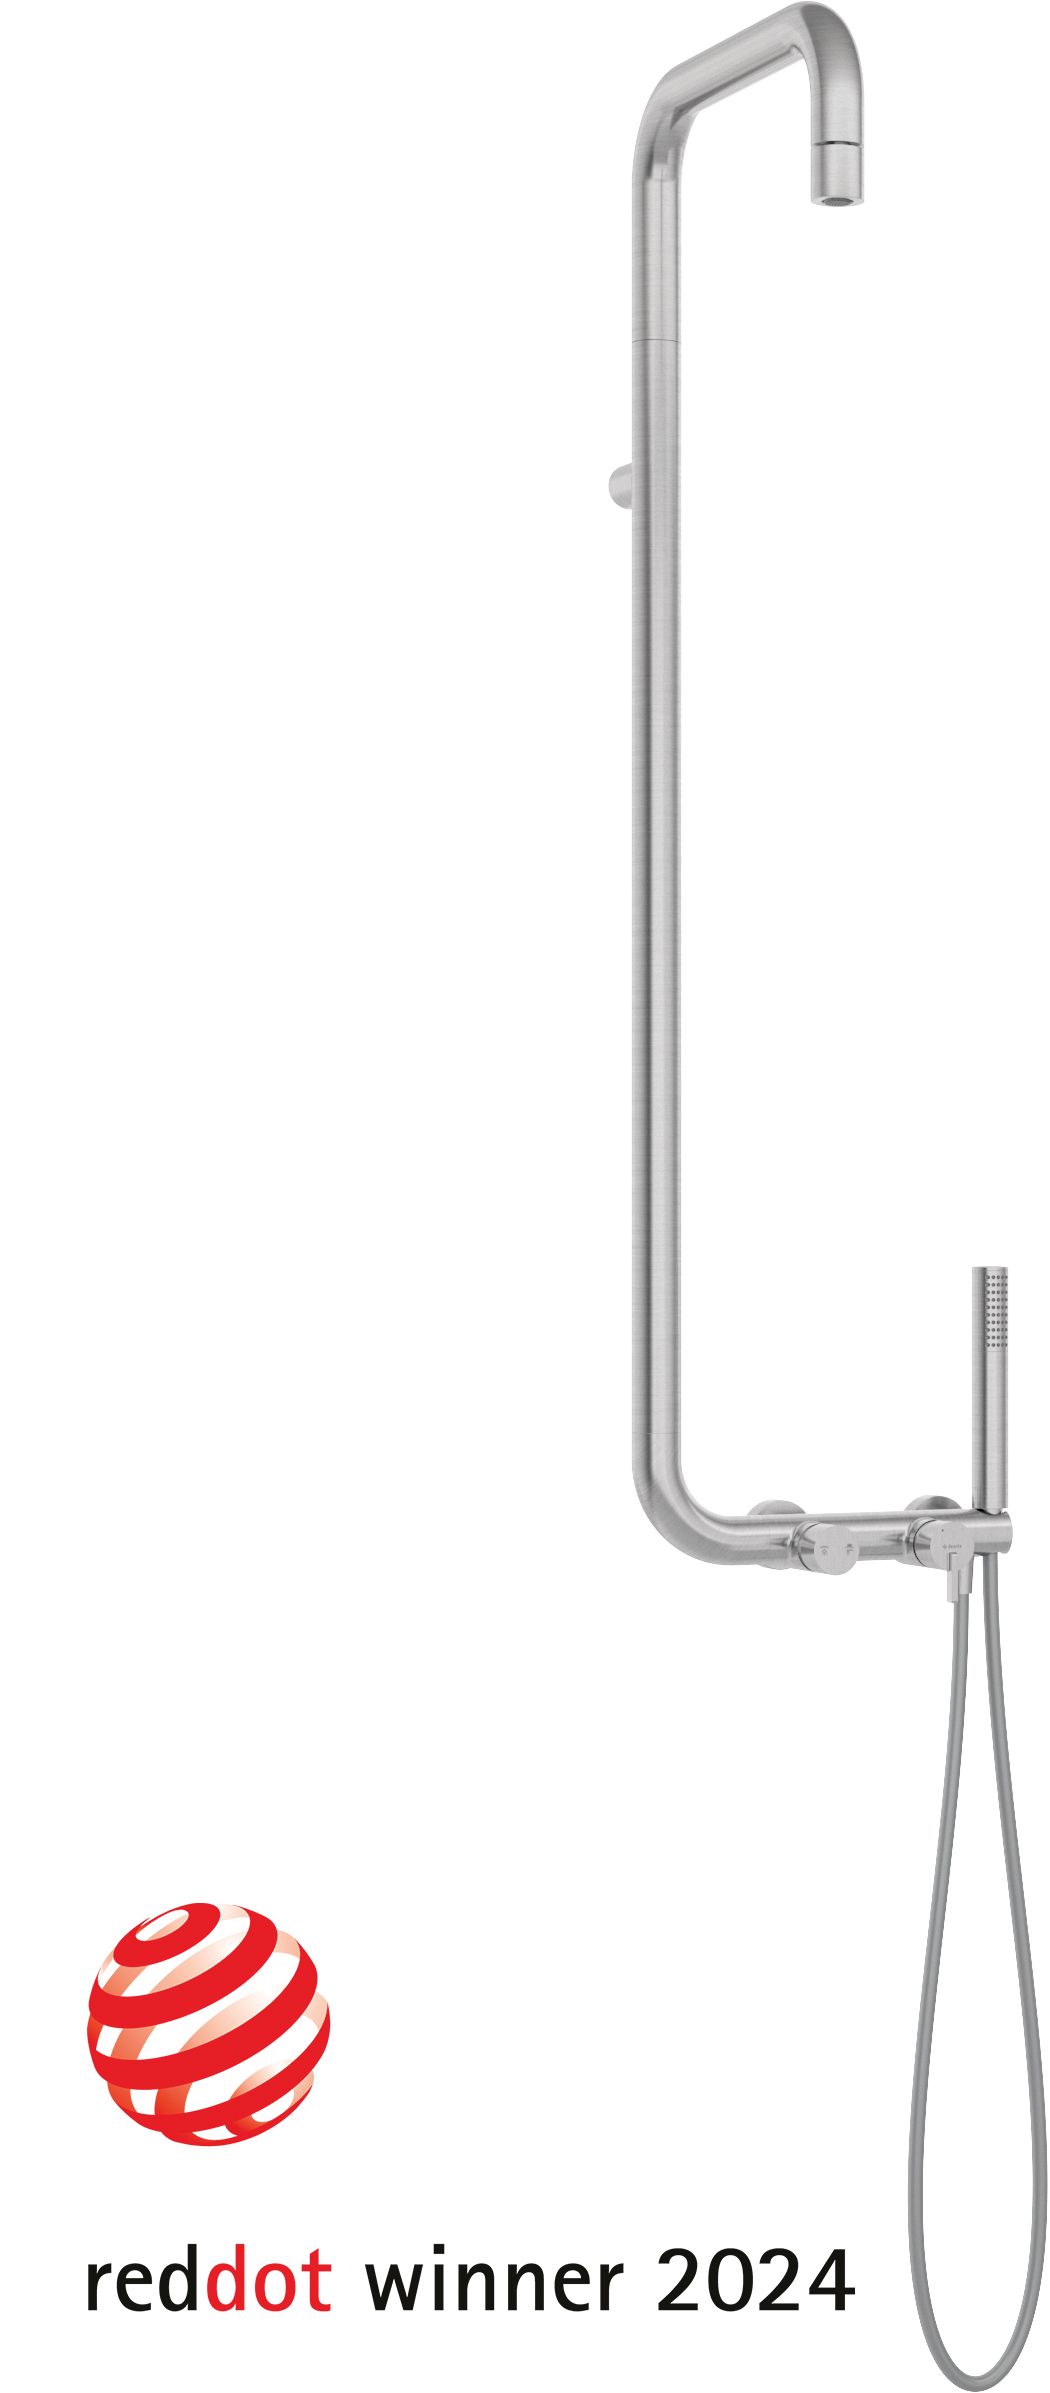 Deszczownica z baterią prysznicową - NQS_F4XM - Główne zdjęcie produktowe